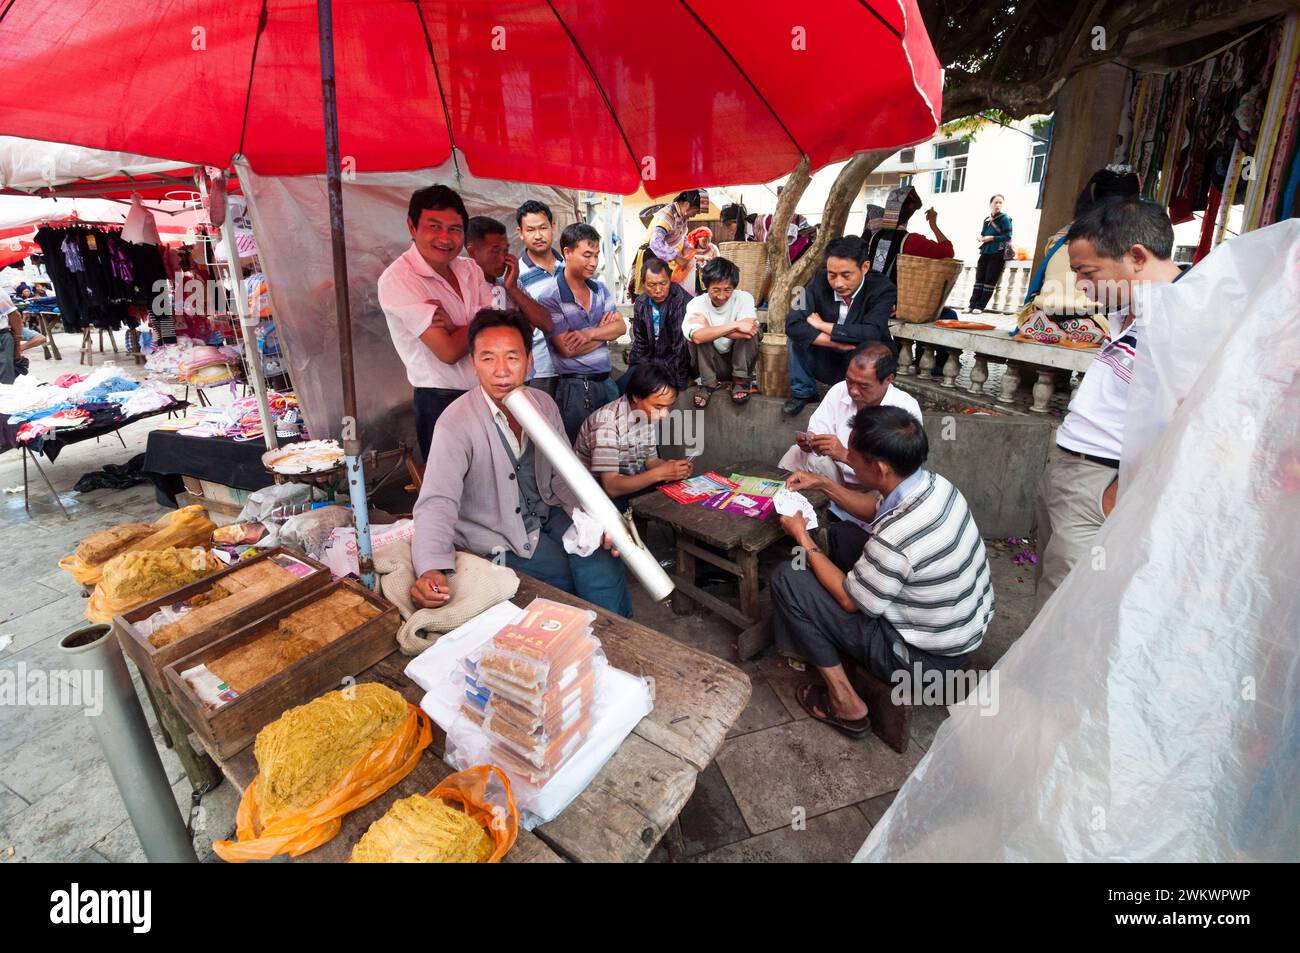 Ein Mann, der eine Triditionspfeife raucht, umgeben von einer Gruppe Männer, die Karten spielen, an einem Verkaufsstand im ländlichen Yunnan China Stockfoto